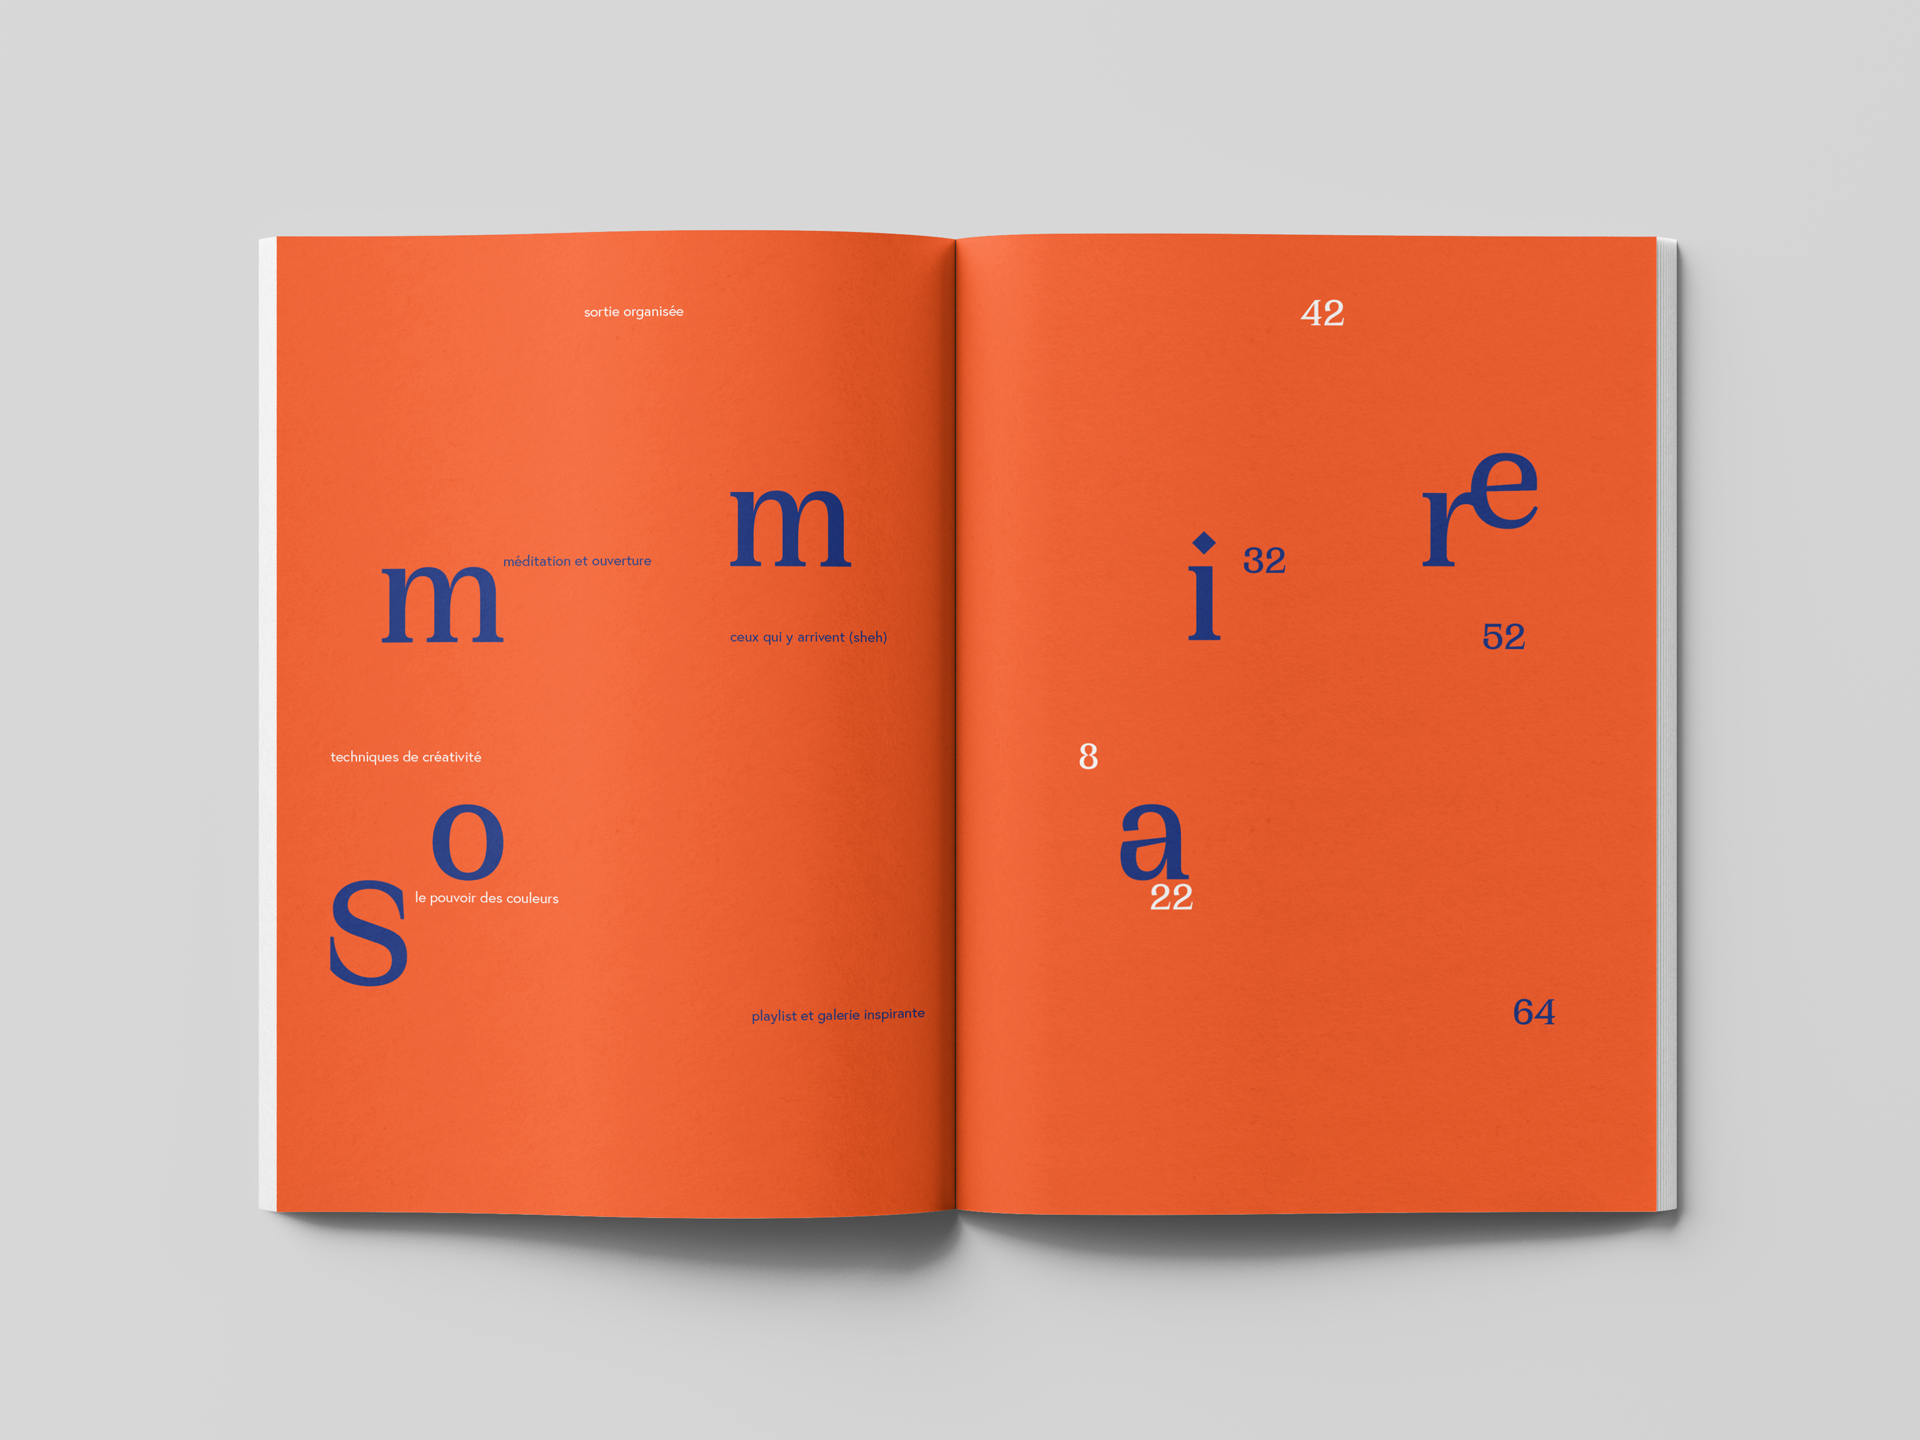 Sommaire du numéro "créativité organisée". La double page est majoritairement orange, le mot sommaire étant écrit avec une typographie incisive et bleue et les différentes catégories et la pagination dans une typo plus classique, alternant entre du bleu et du blanc.